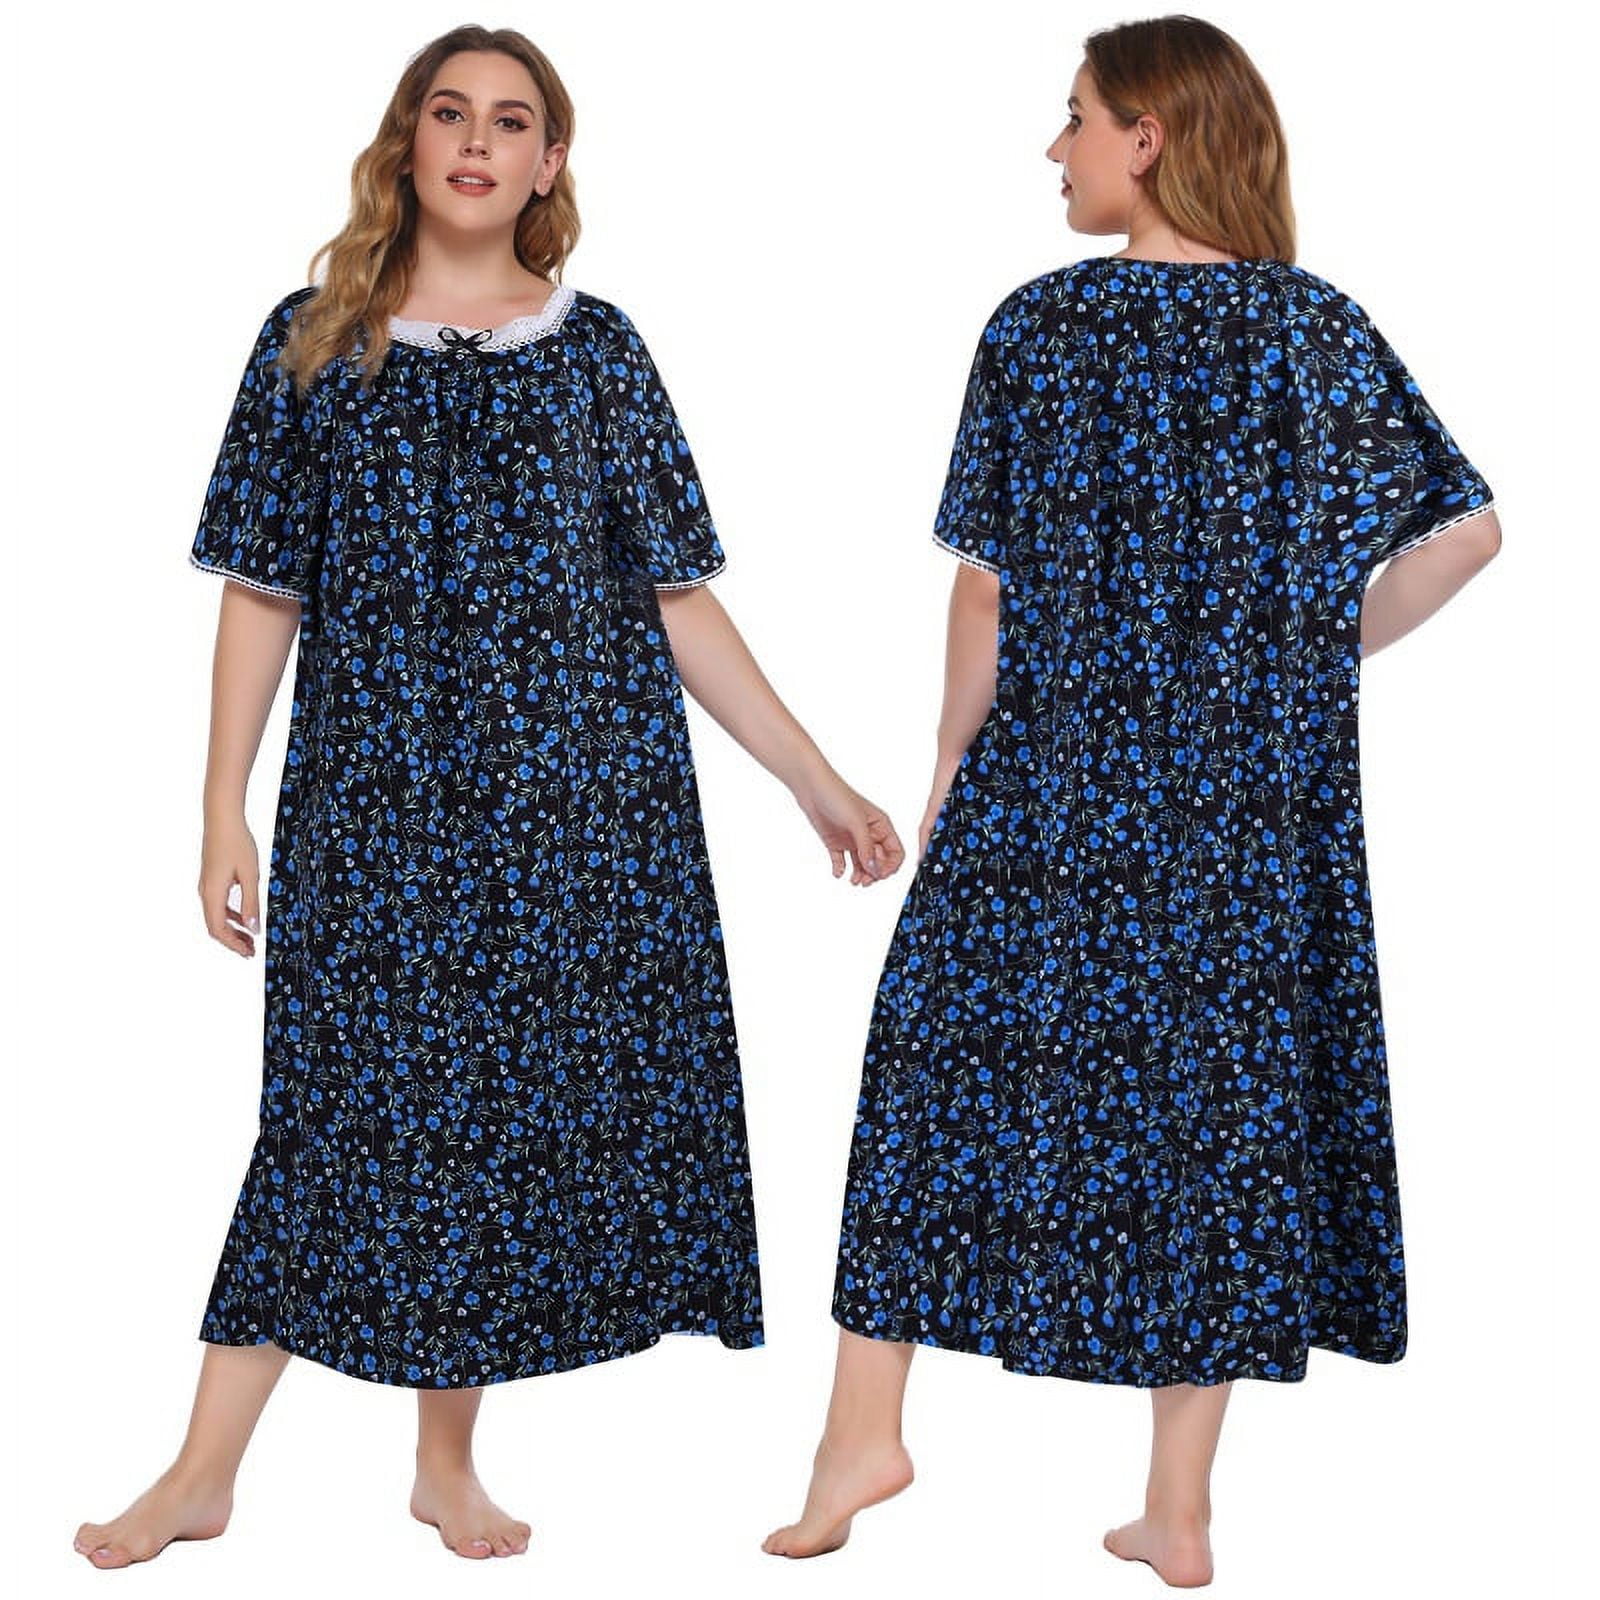 Women's Plus Size Long Nightgown Short Sleeve Lightweight Sleepwear ...